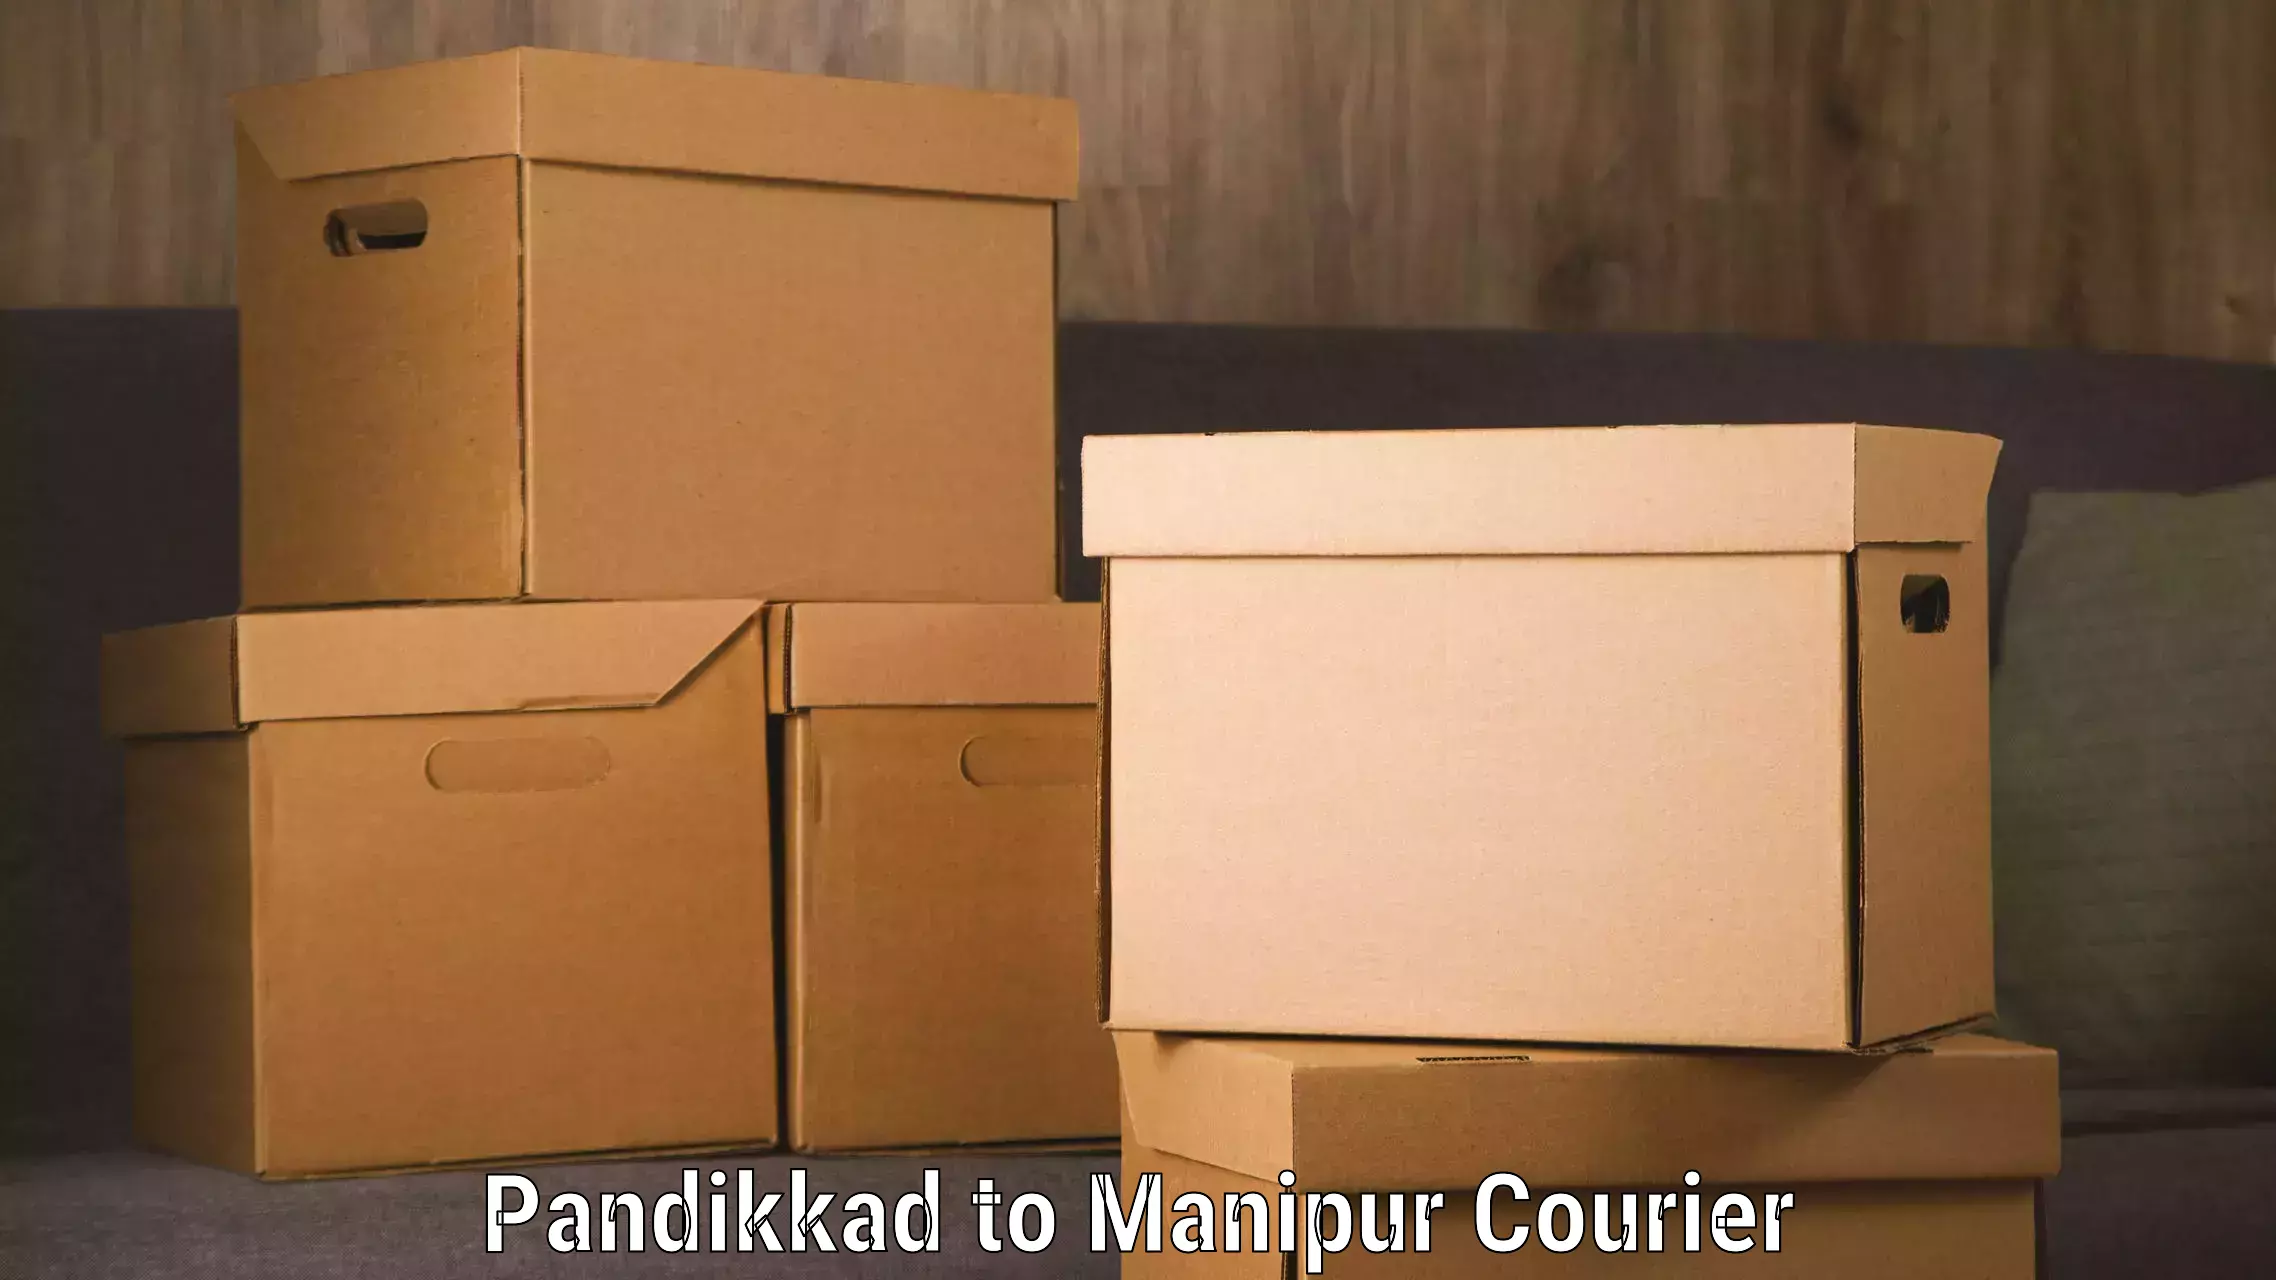 24/7 courier service Pandikkad to IIIT Senapati